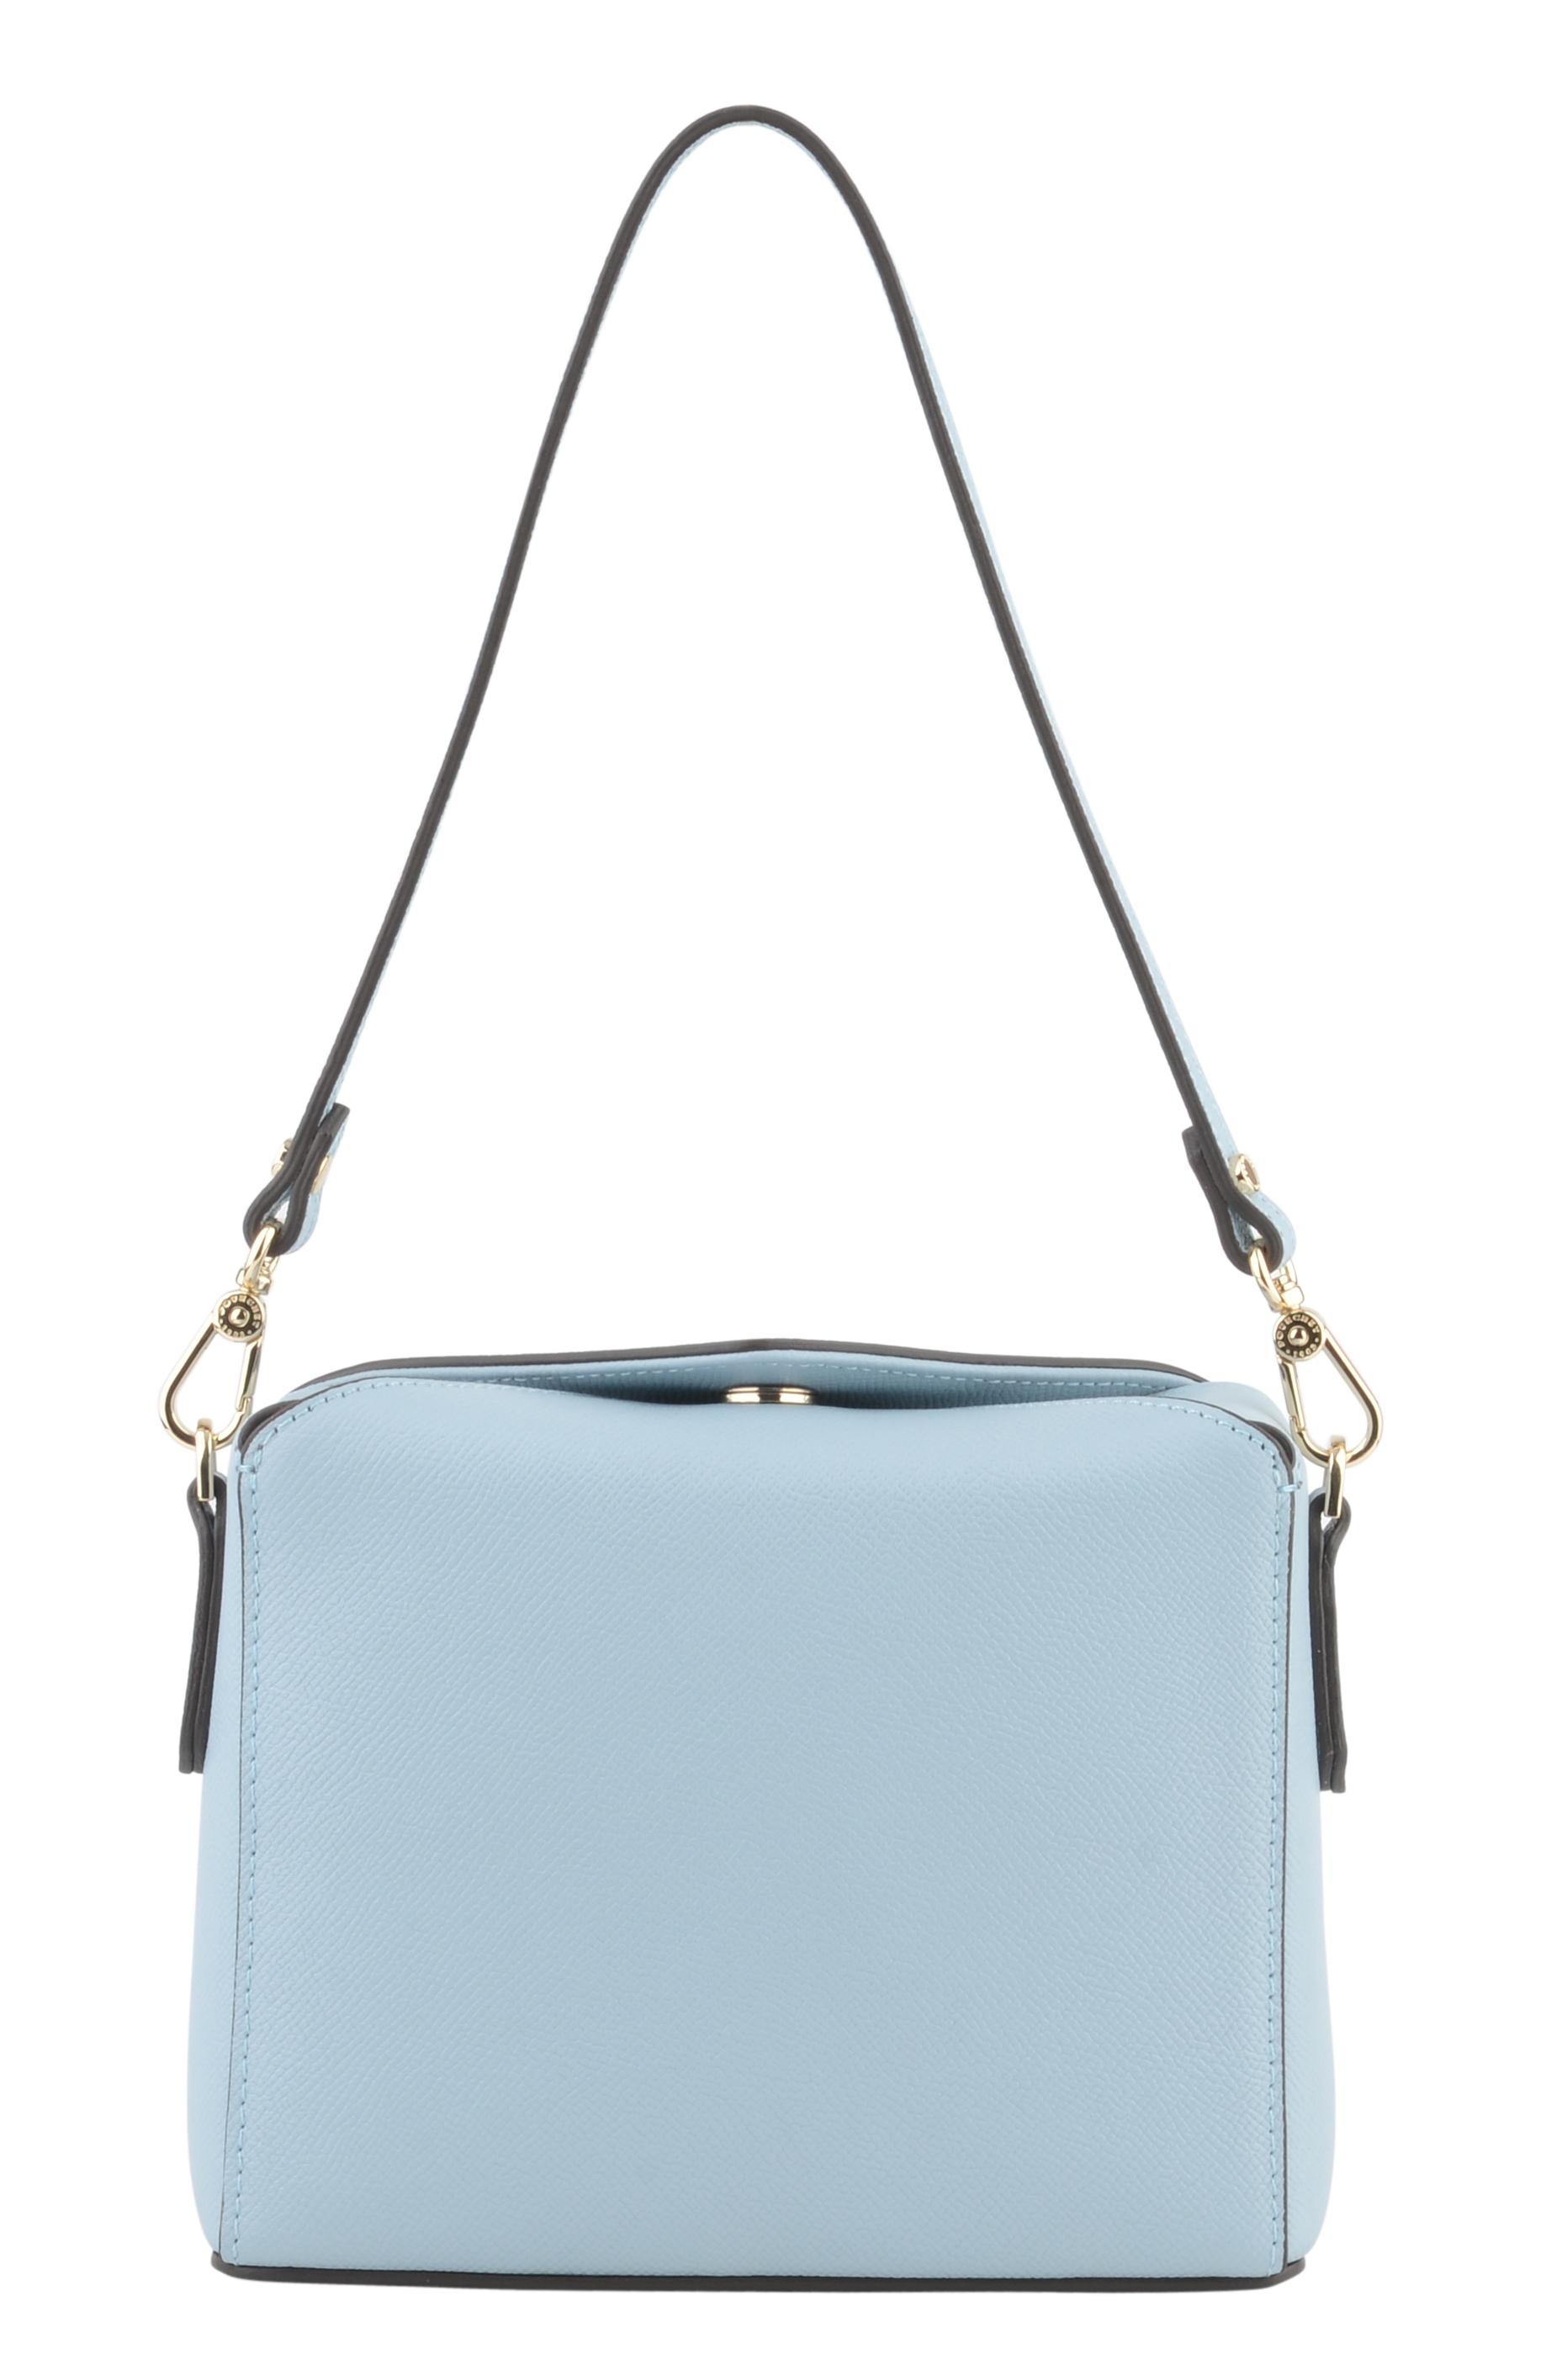 Женская сумка Maison Pourchet, голубая, цвет голубой, размер ONE SIZE - фото 4